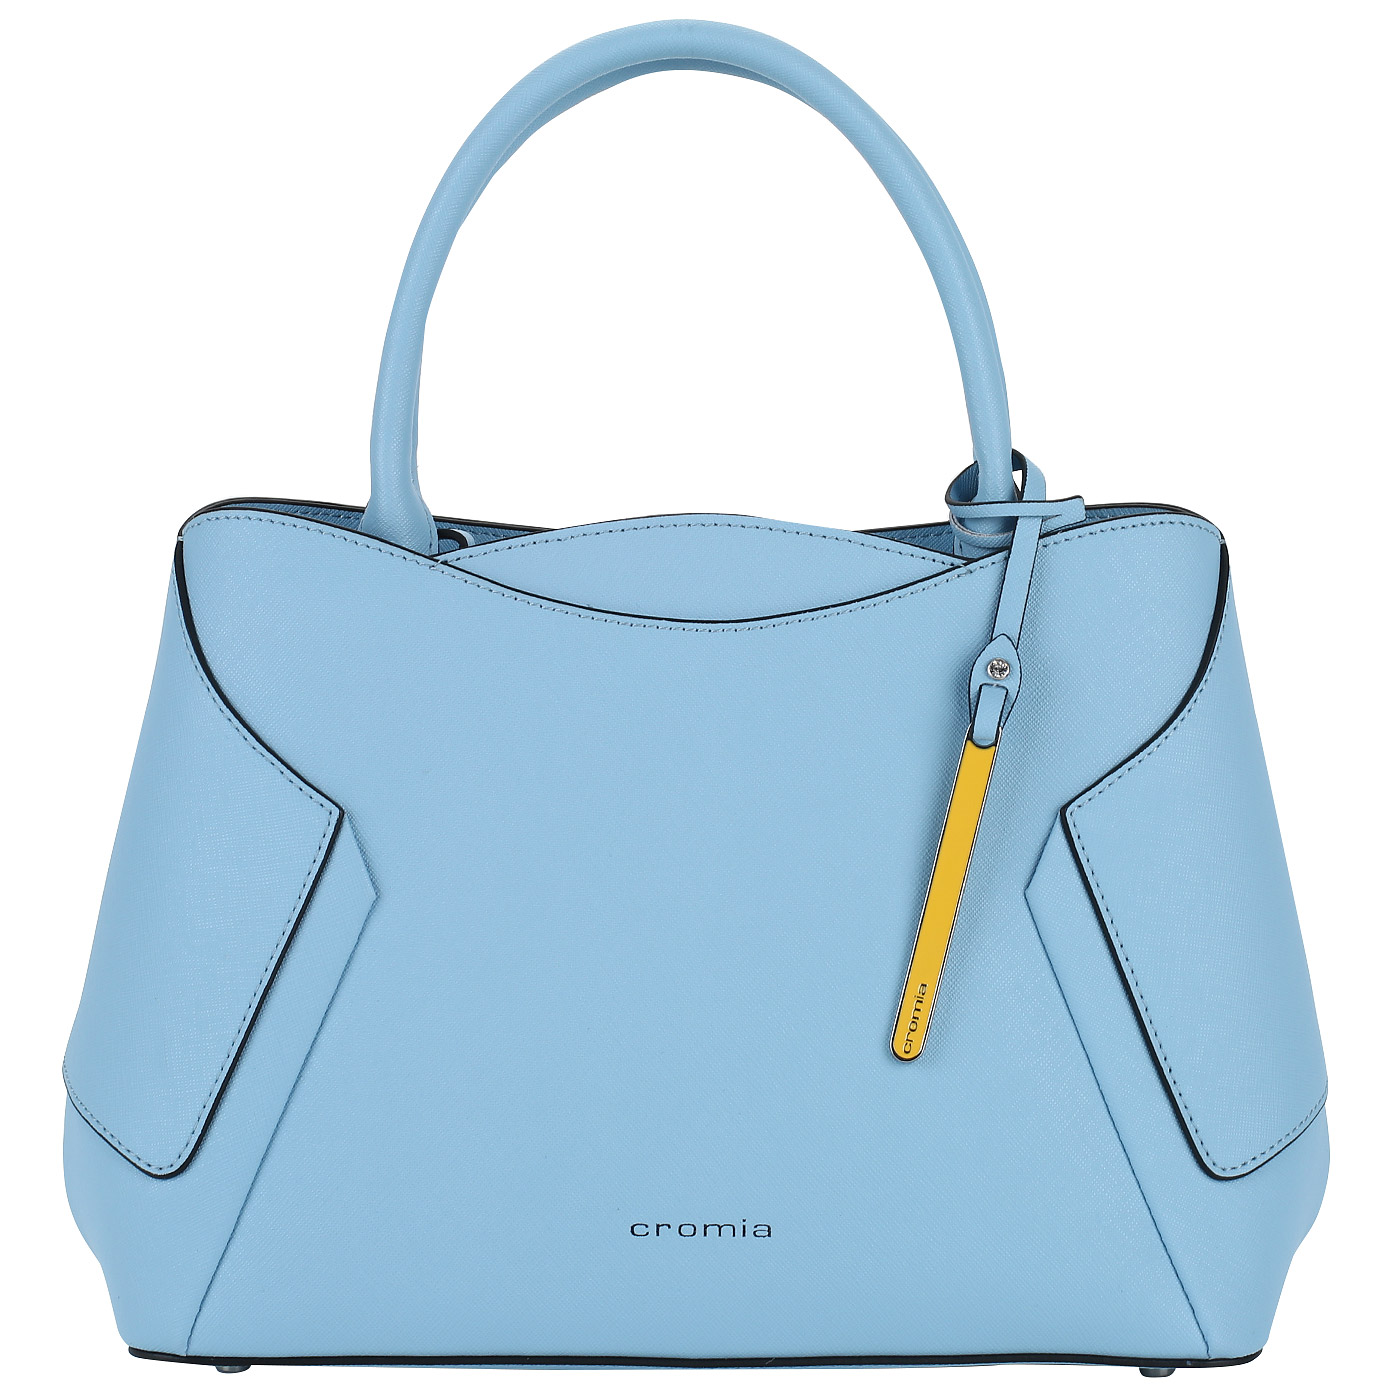 Cromia Женская сумка со съемным ремешком